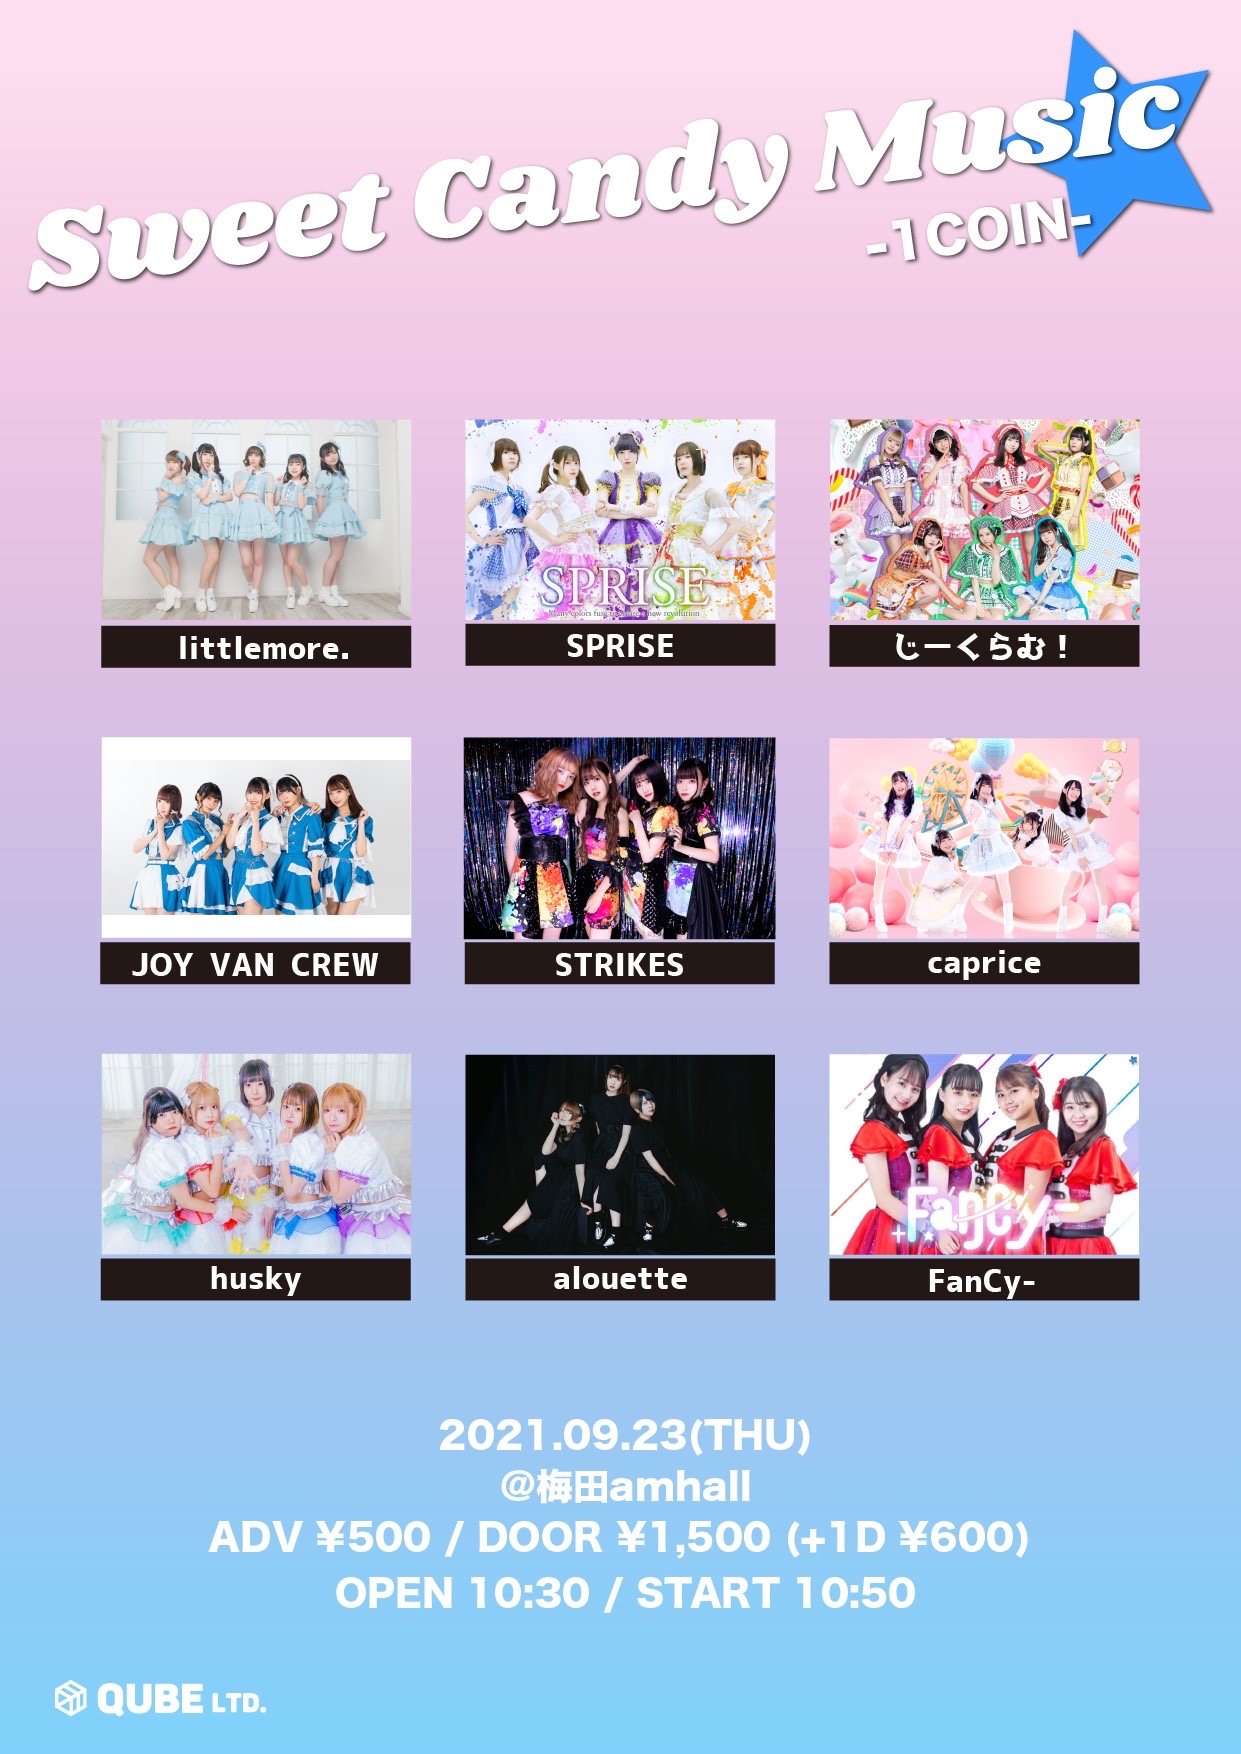 9/23(木祝) Sweet Candy Music★ -1COIN-